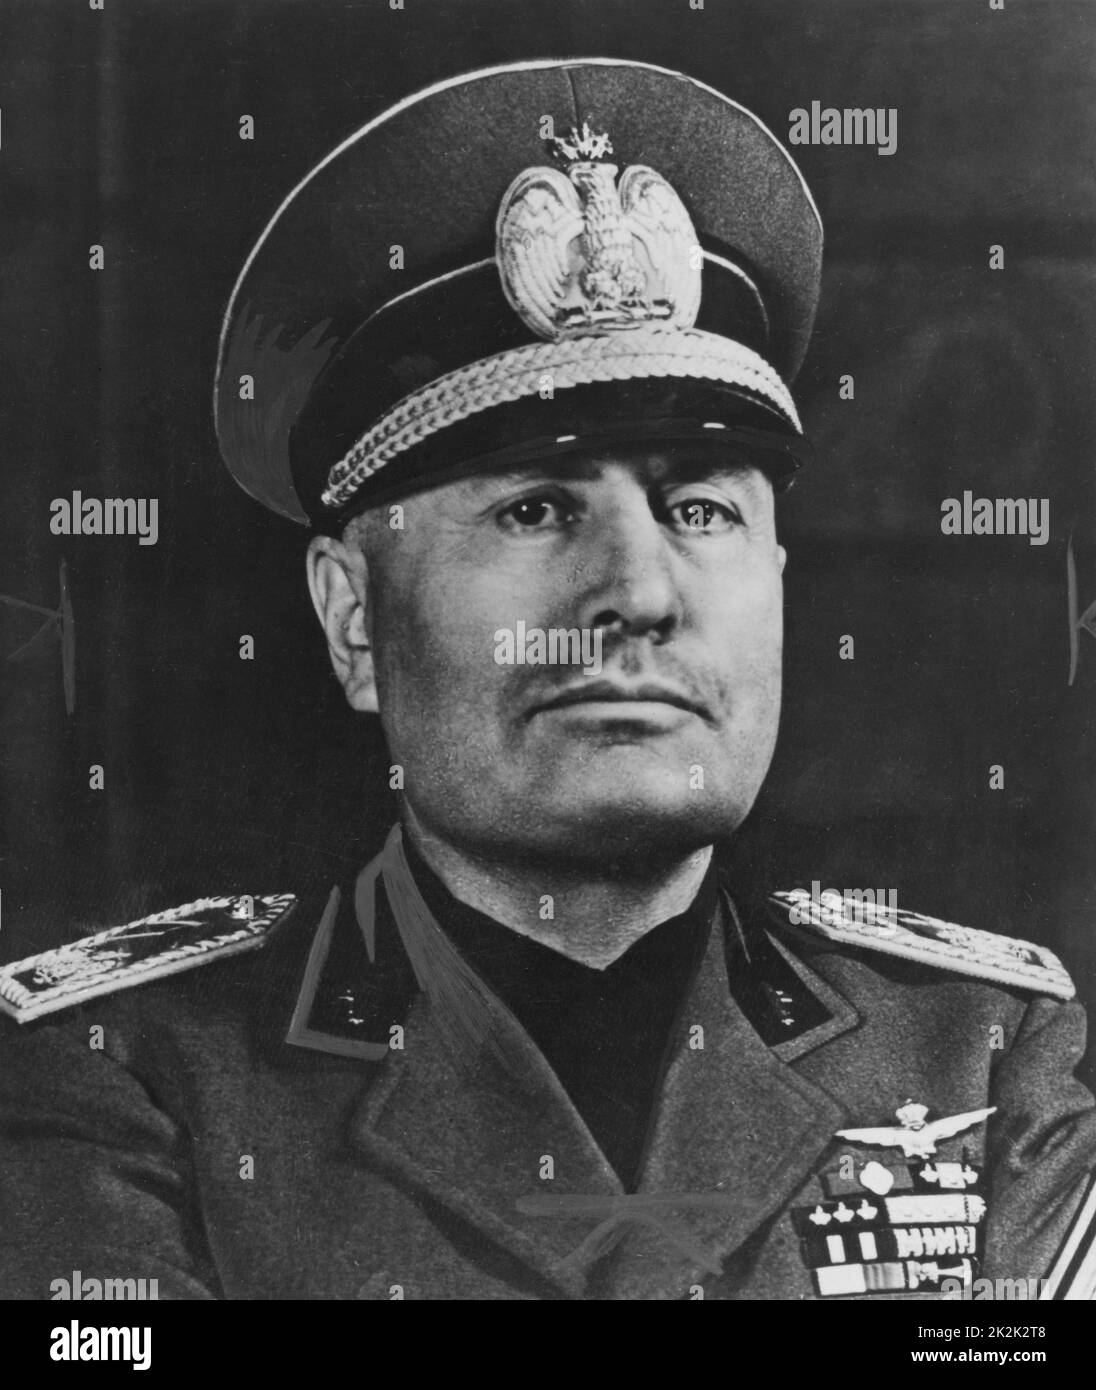 Portrait de l'homme d'État italien Benito Mussolini en 1942. Il a établi une dictature fasciste en Italie de 1925 à 1943. Banque D'Images